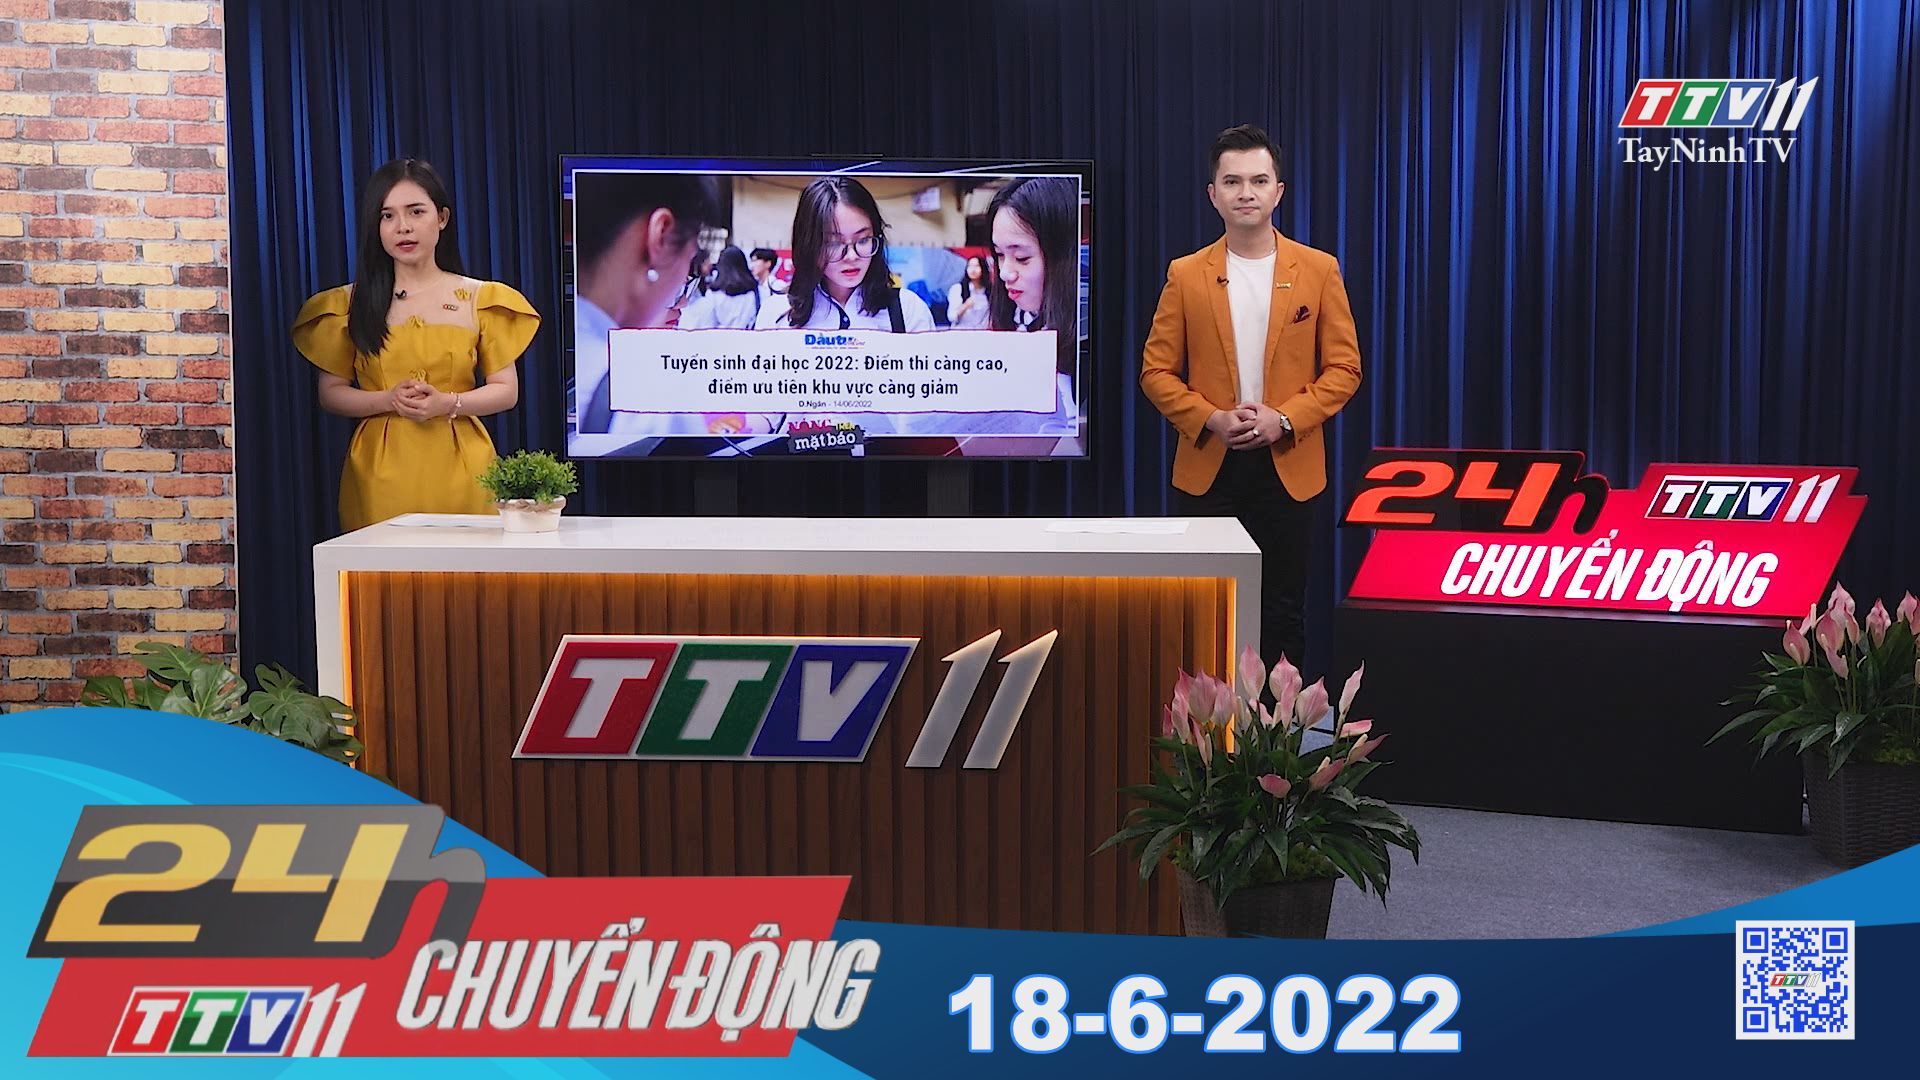 24h Chuyển động 18-6-2022 | Tin tức hôm nay | TayNinhTV